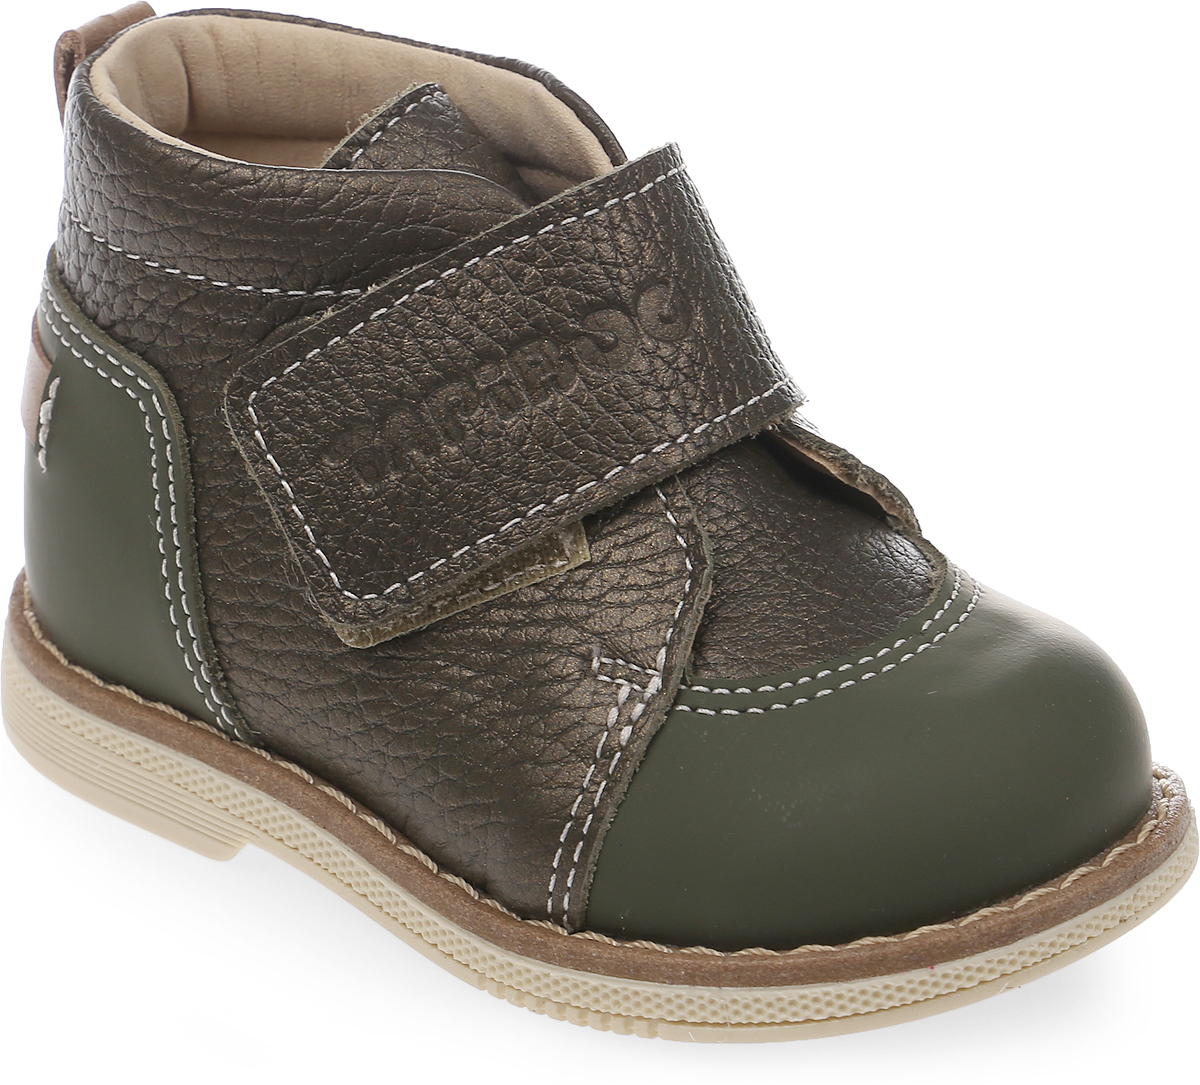 Ботинки для мальчика Tapiboo Осока, цвет: зеленый. FT-24015.18-OL10O.01. Размер 18